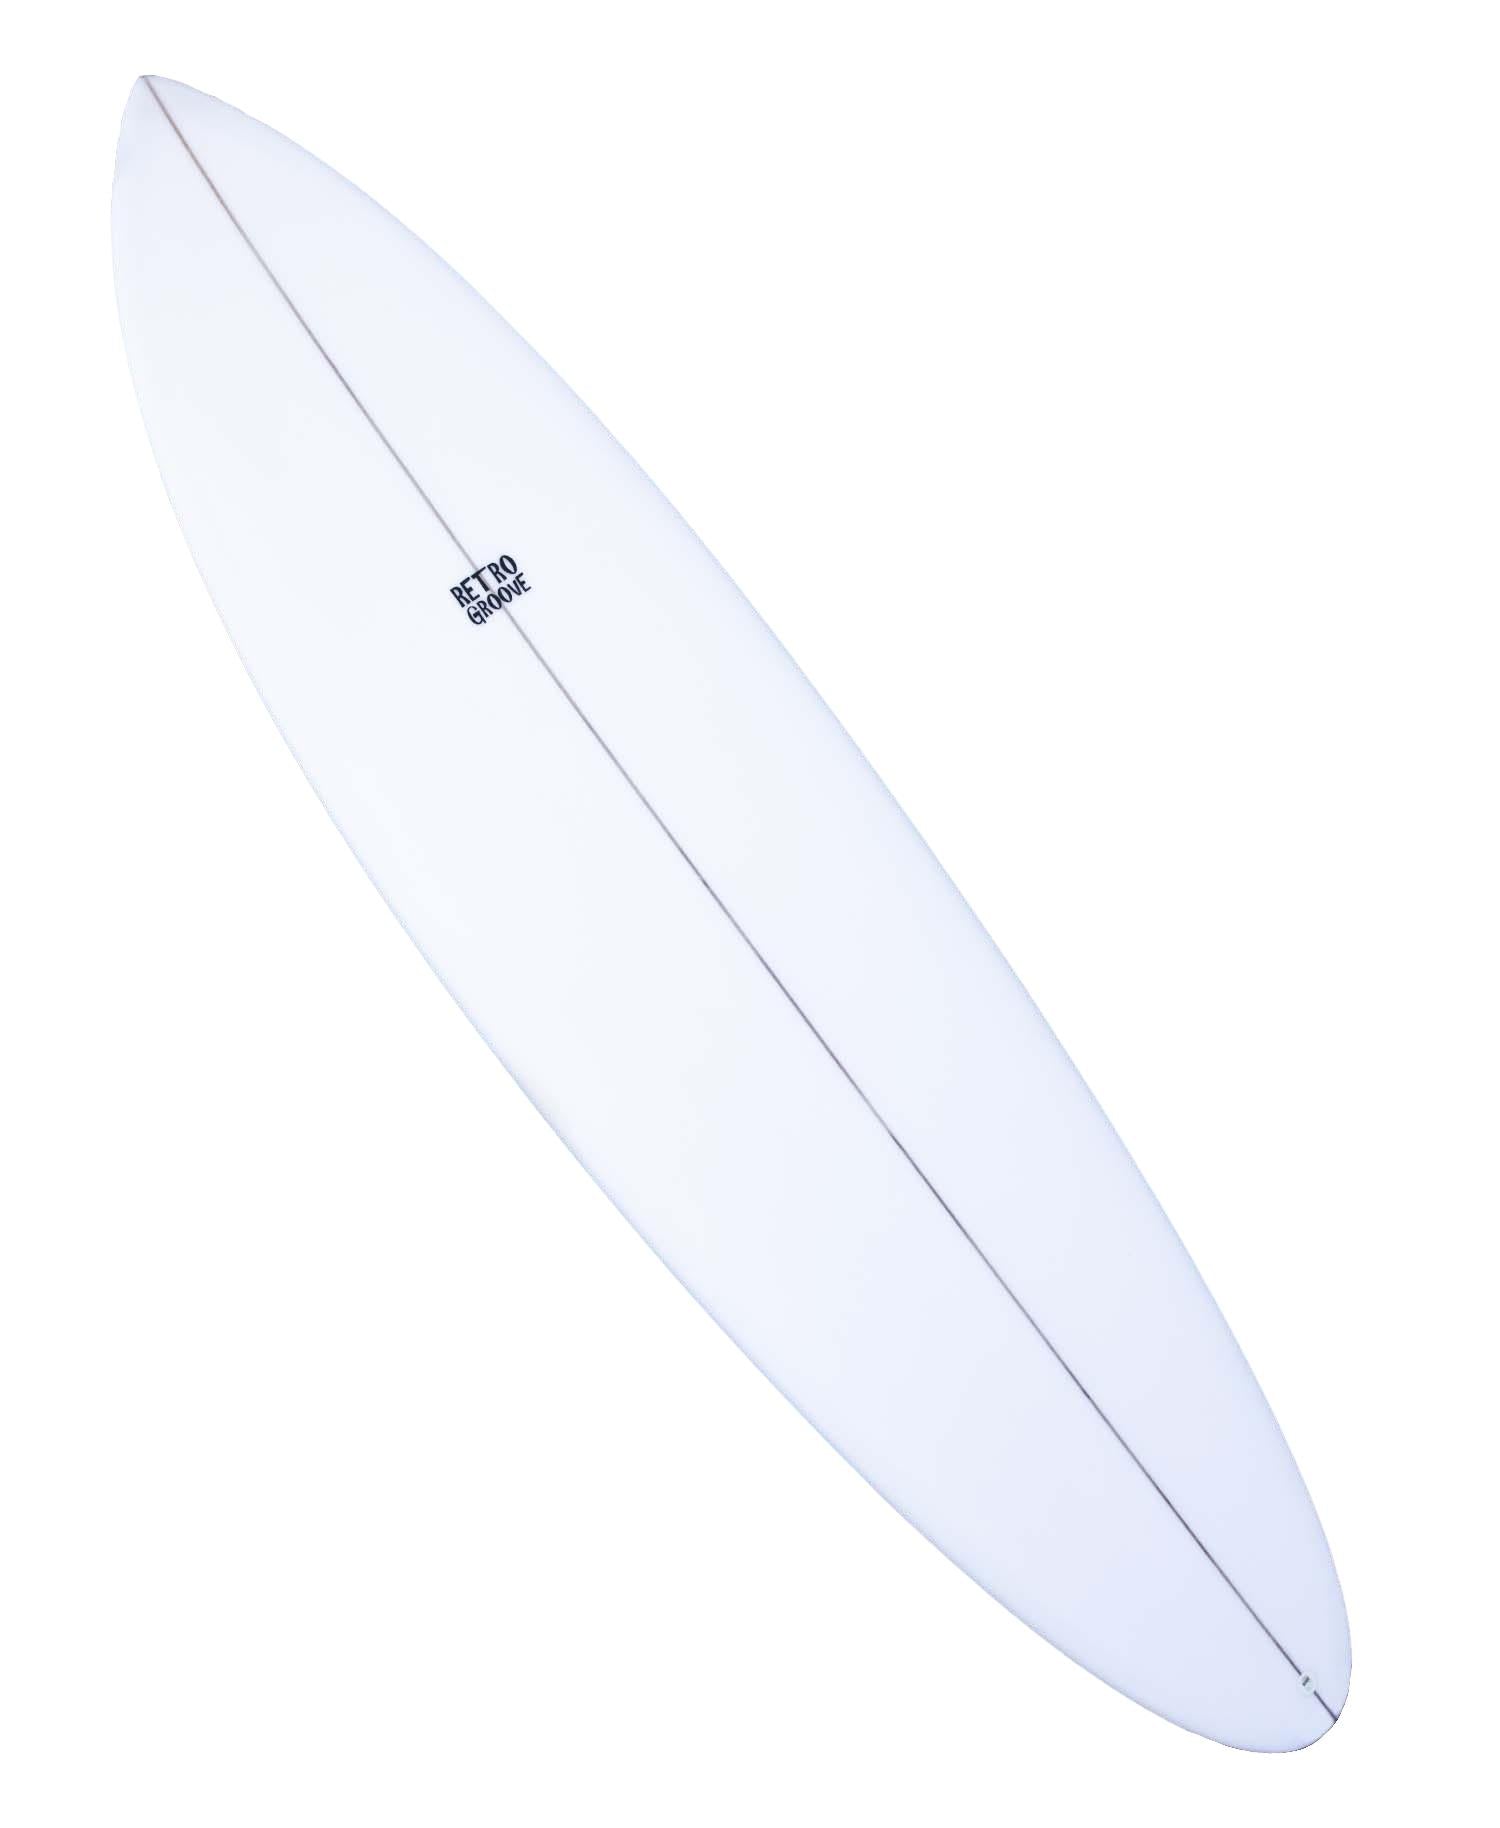 RETRO GROOVE 'FUN' SURFBOARD EPOXY